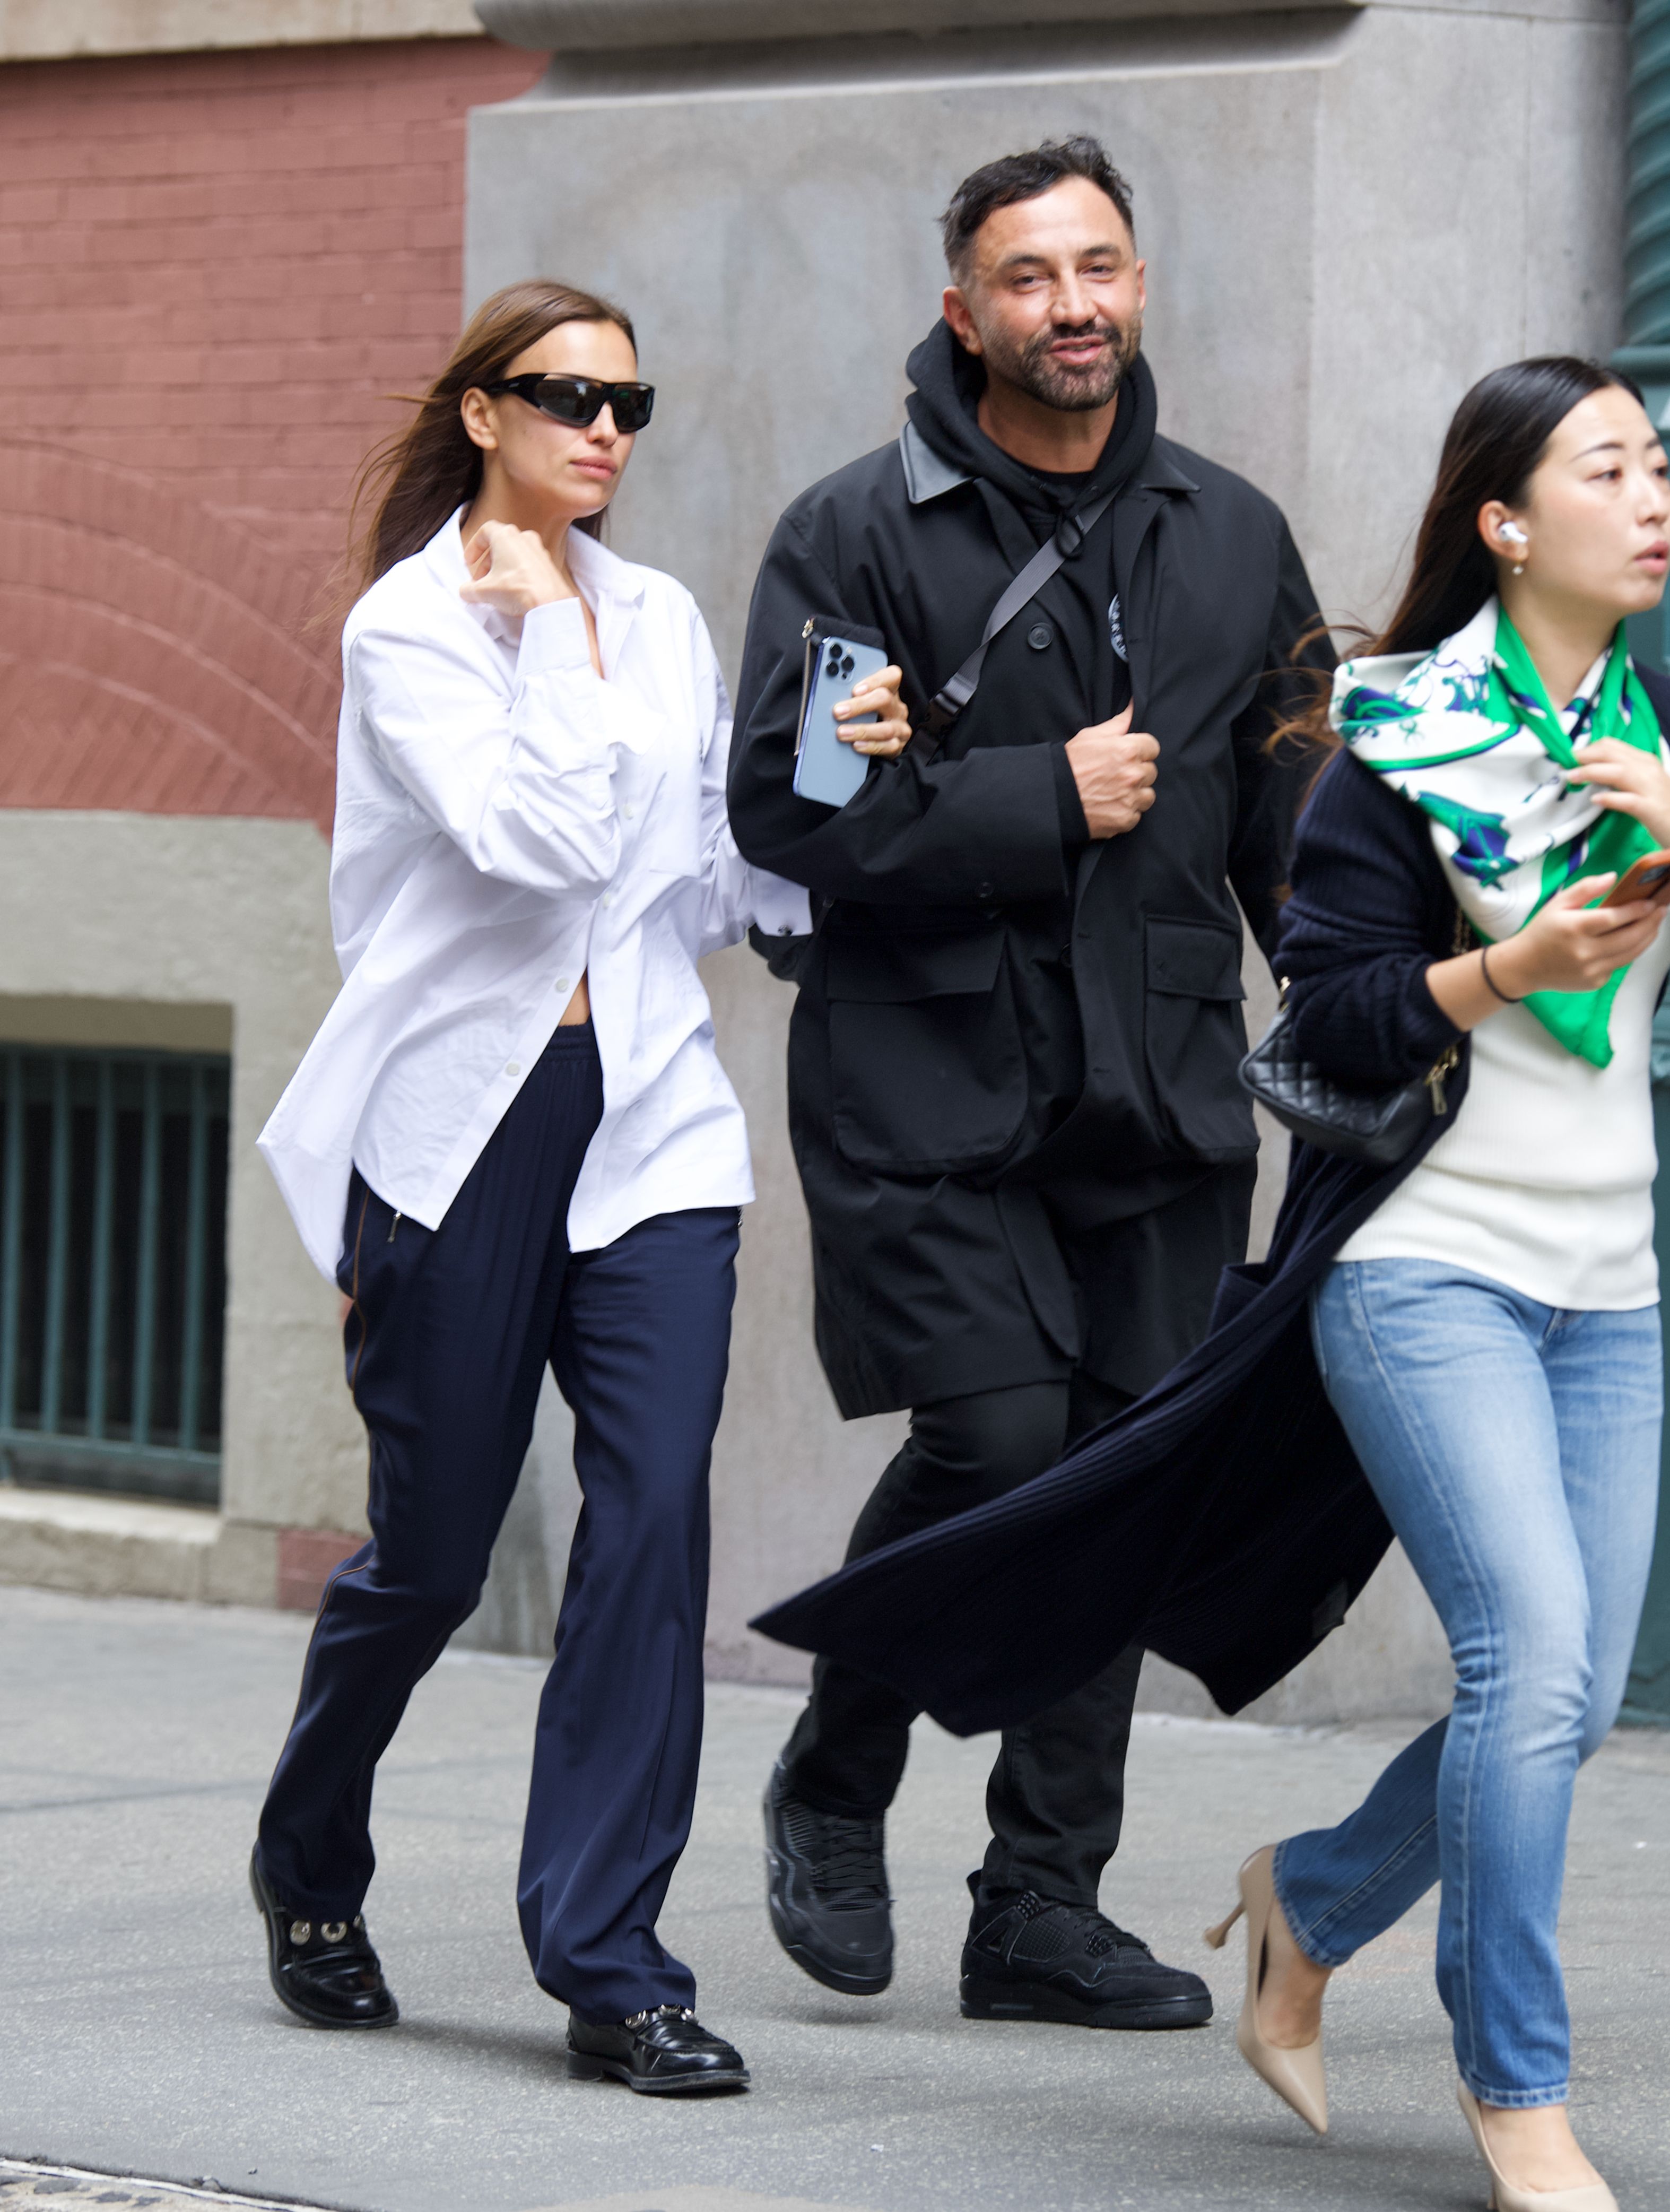 Día de compras. Irina Shayk fue fotografiada mientras caminaba del brazo de Riccardo Tisci por las calles de barrio Soho, en Nueva York. La modelo lució un pantalón azul y una camisa blanca oversize que usó con algunos botones abiertos. Además, llevó lentes de sol